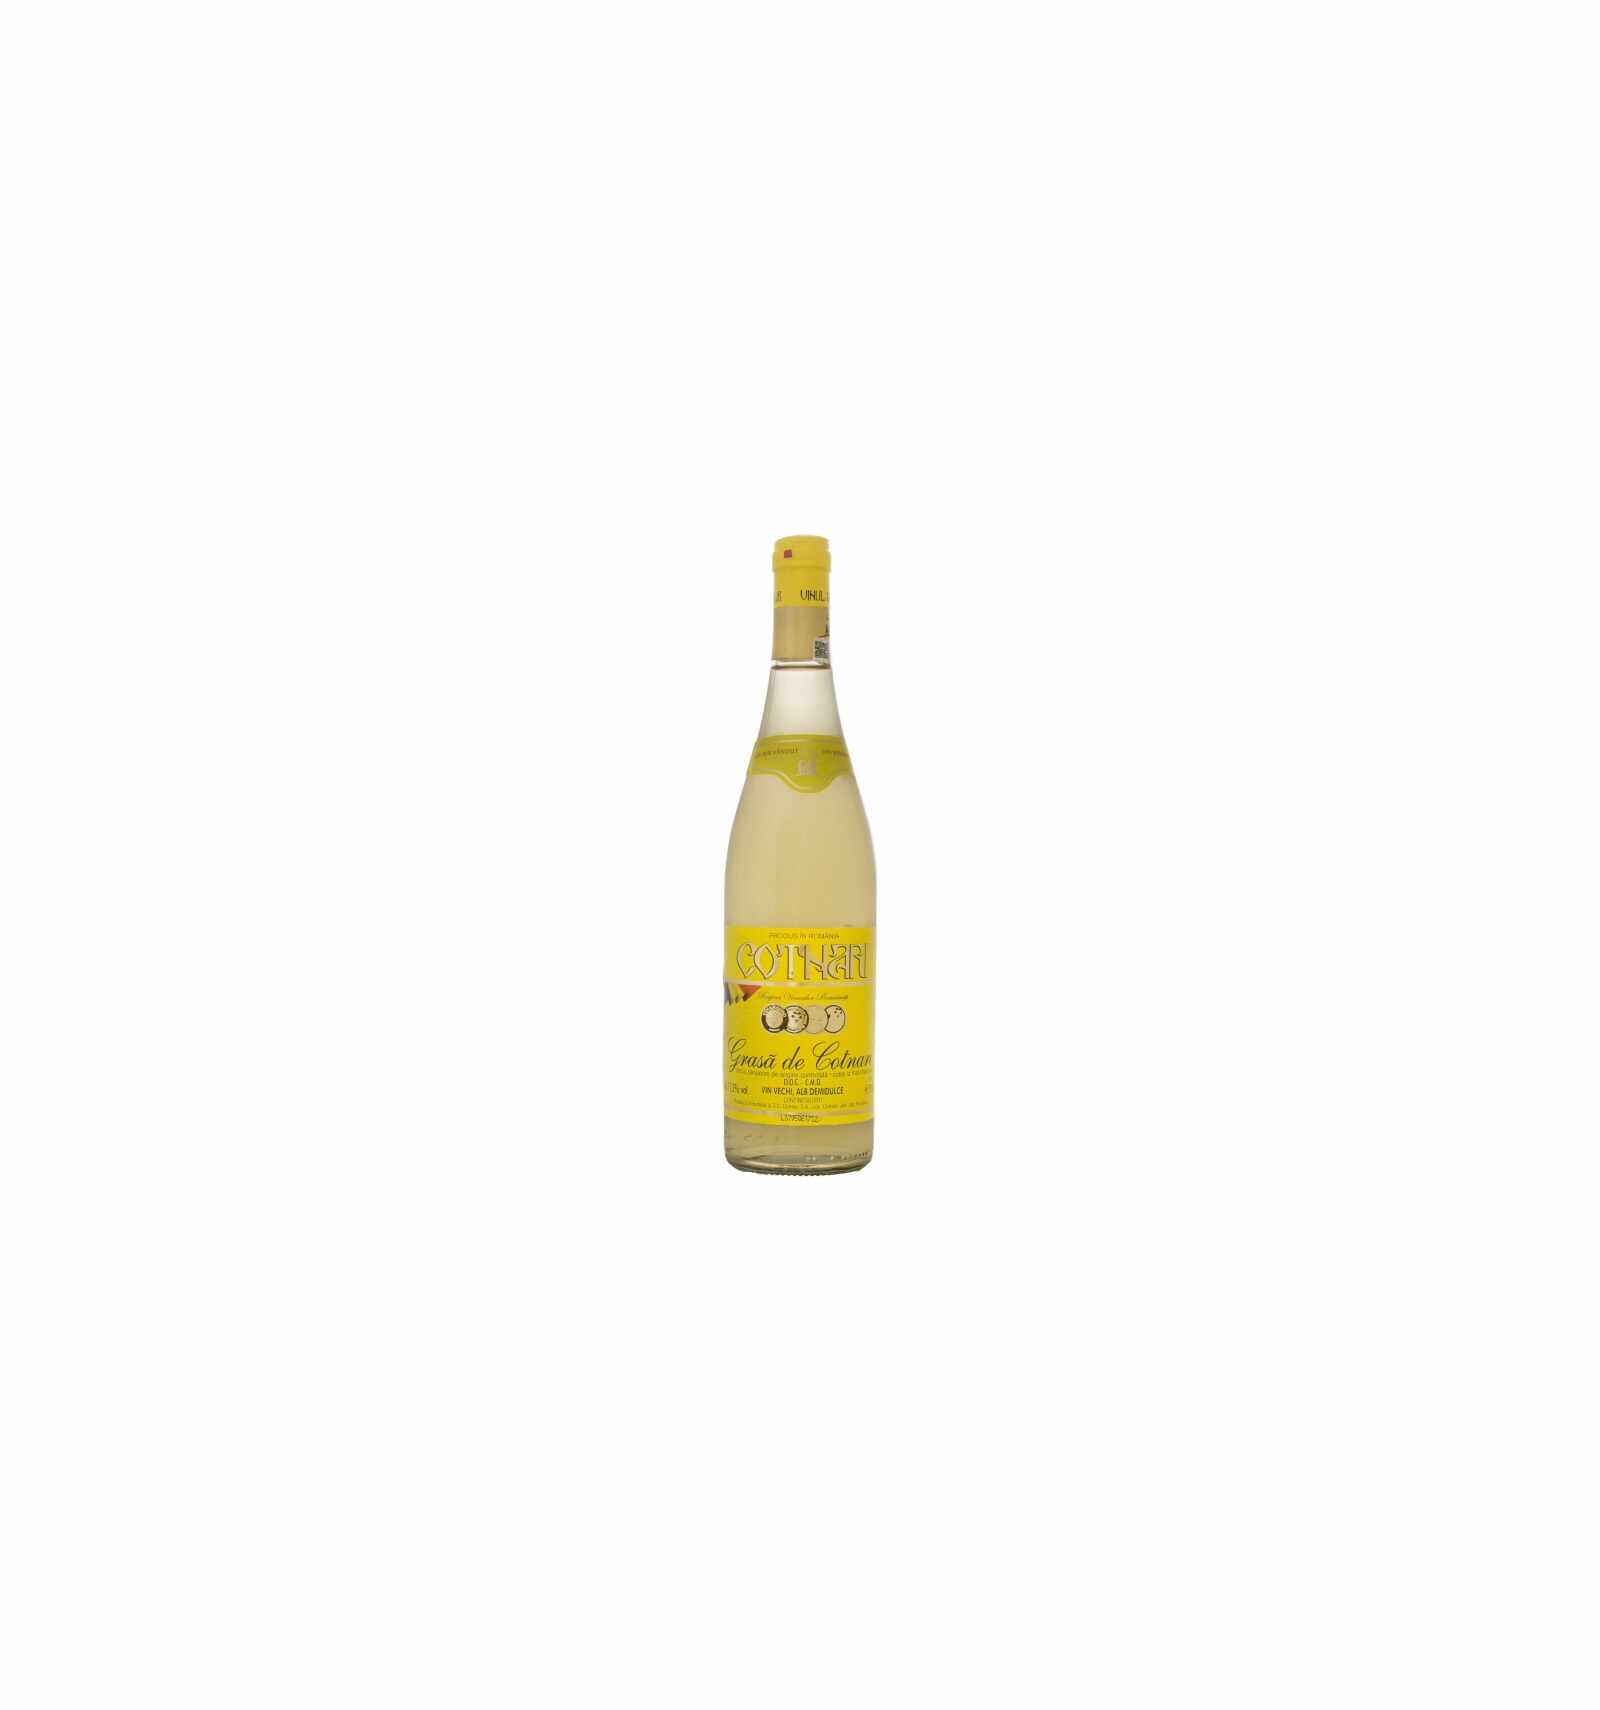 Vin alb demidulce, Grasa de Cotnari, 0.75L, 12% alc., Romania